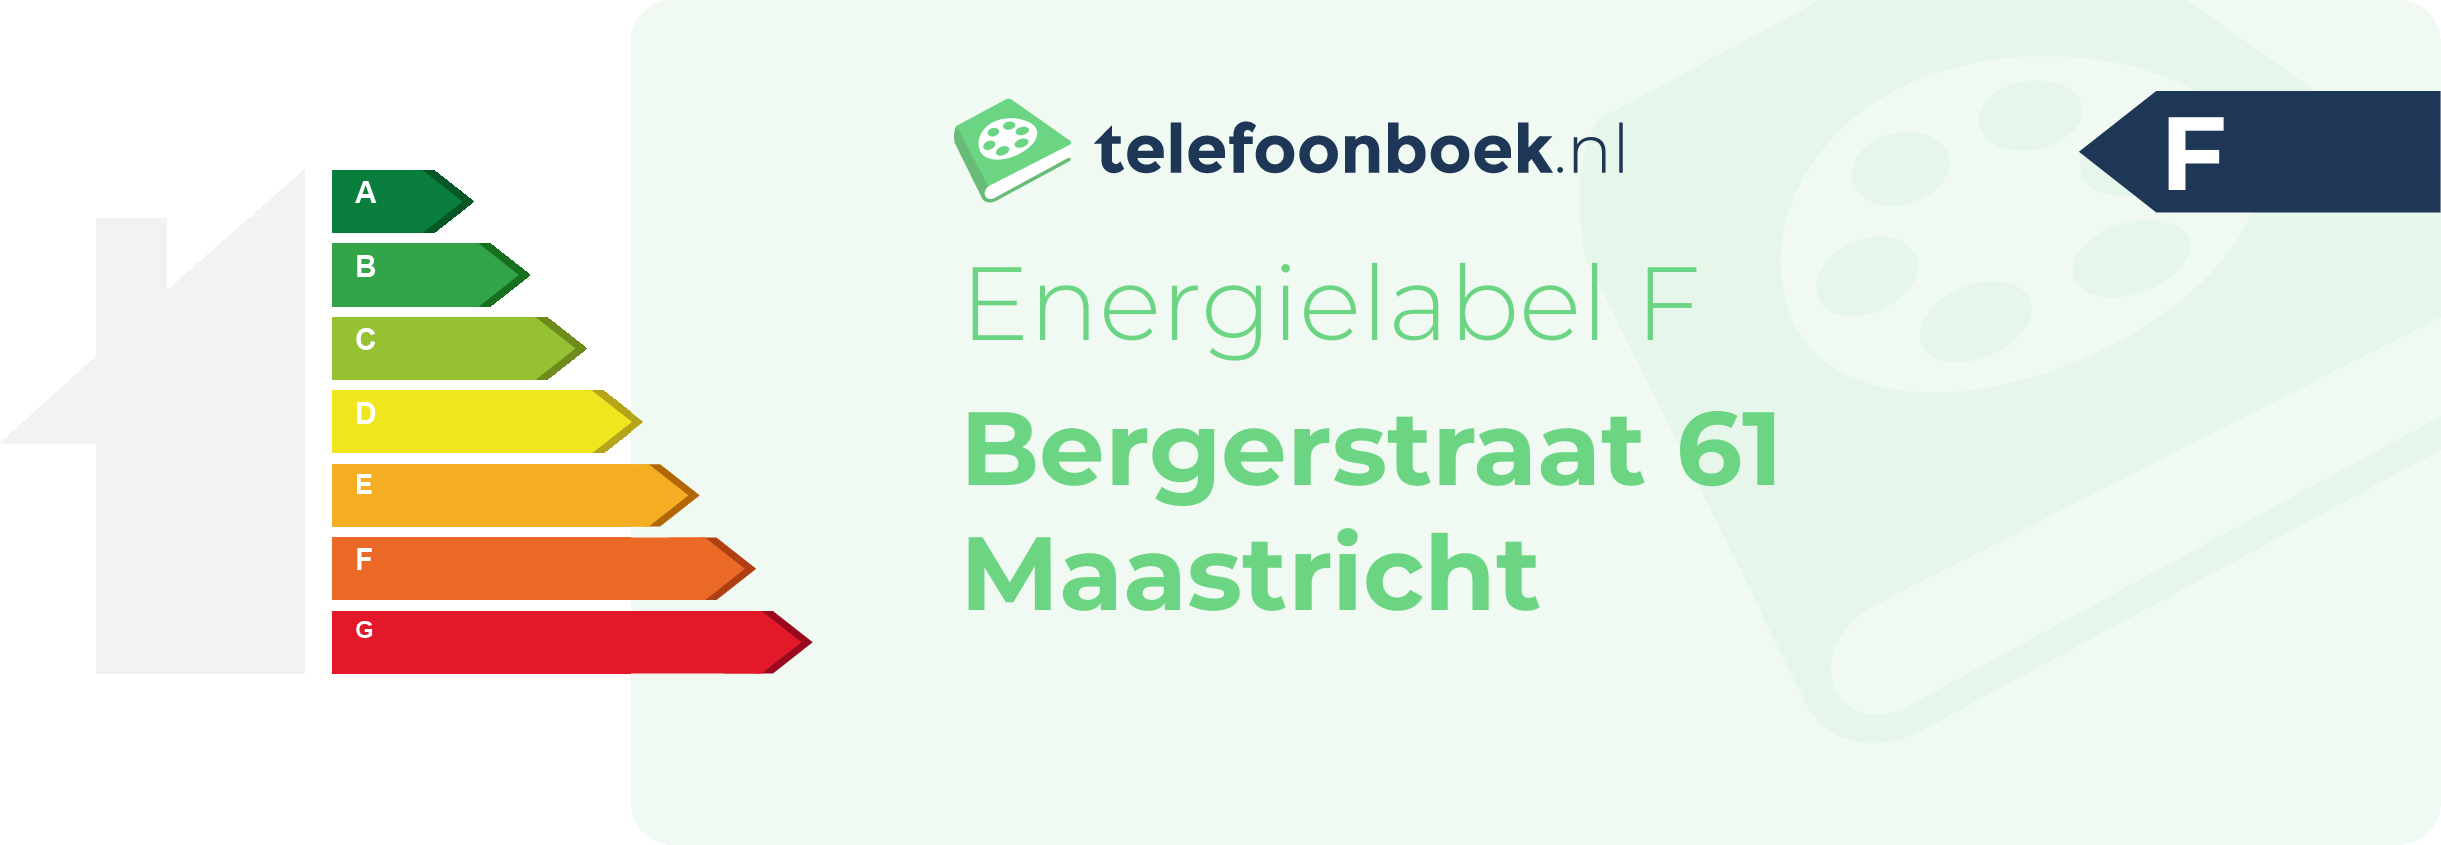 Energielabel Bergerstraat 61 Maastricht